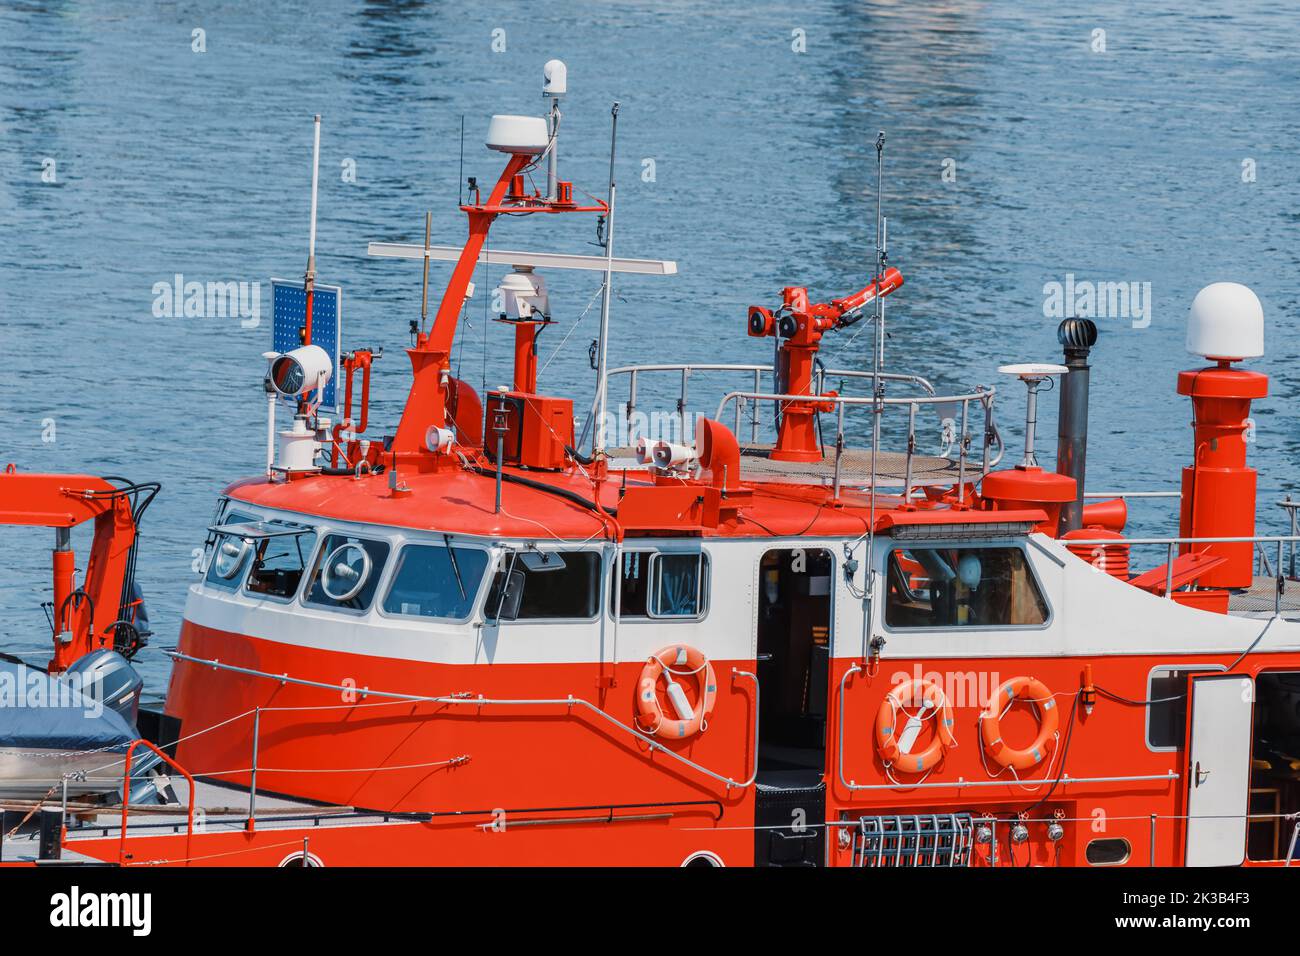 Antennes, radars, sonars et autres équipements de haute technologie pour la communication et la géolocalisation de bateaux d'incendie et de sauvetage Banque D'Images